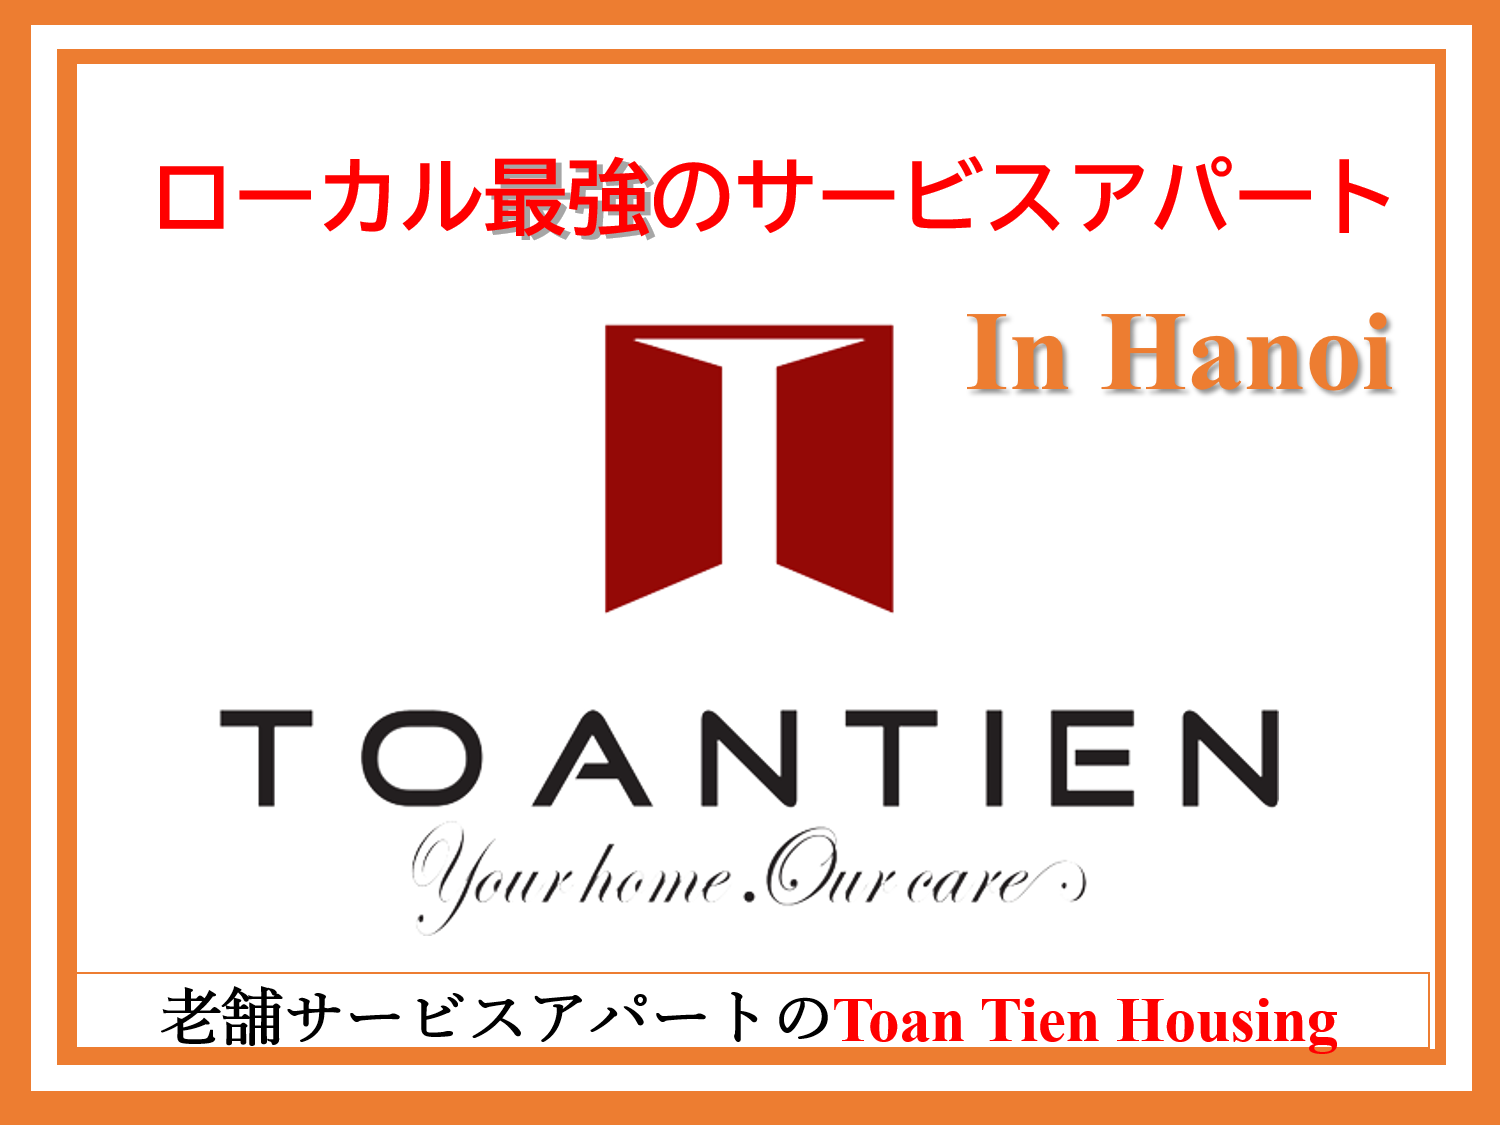 ハノイ最大のサービスアパート運営のローカル企業【Toan Tien Housing】